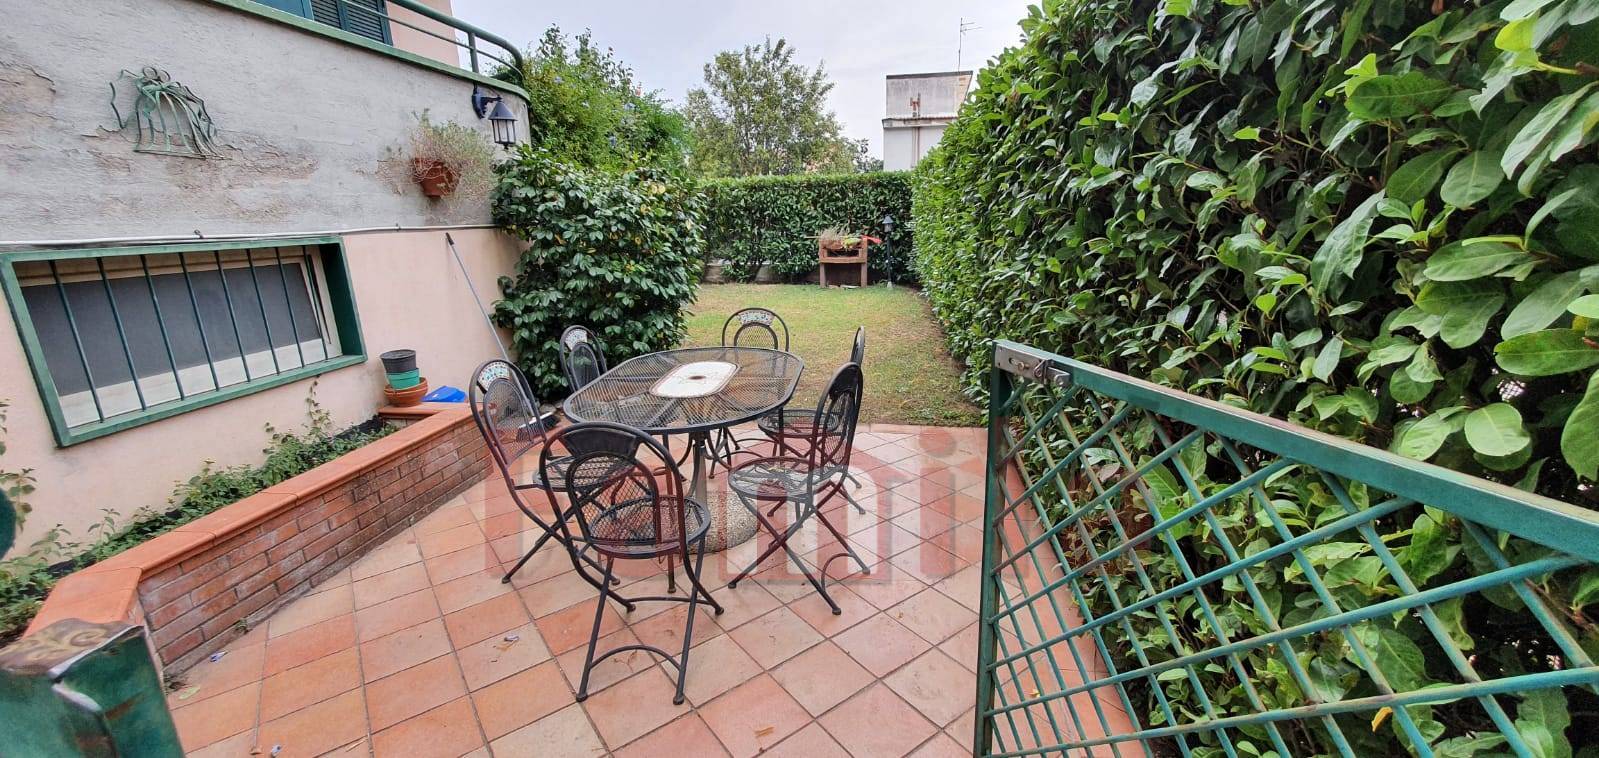 Appartamento in vendita a Quadrelle, 3 locali, prezzo € 69.000 | CambioCasa.it